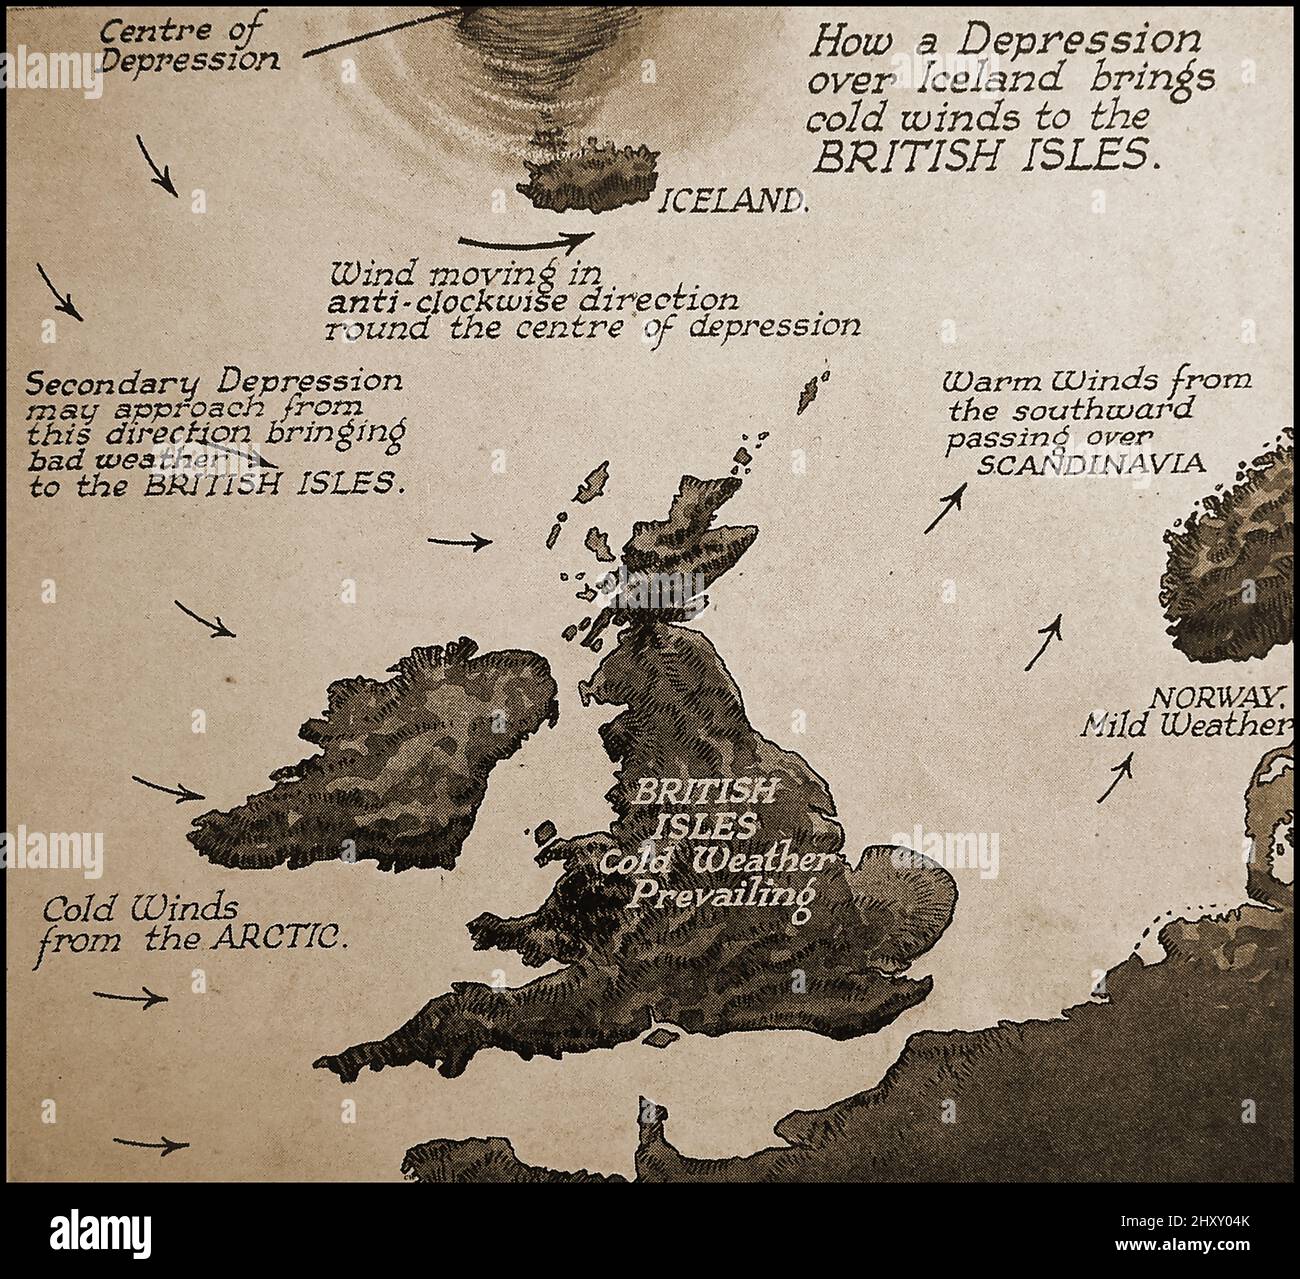 c1940- eine alte Pictoria; meteorologische Karte, die zeigt, wie eine Depression über Island die Britischen Inseln beeinflusst. Stockfoto